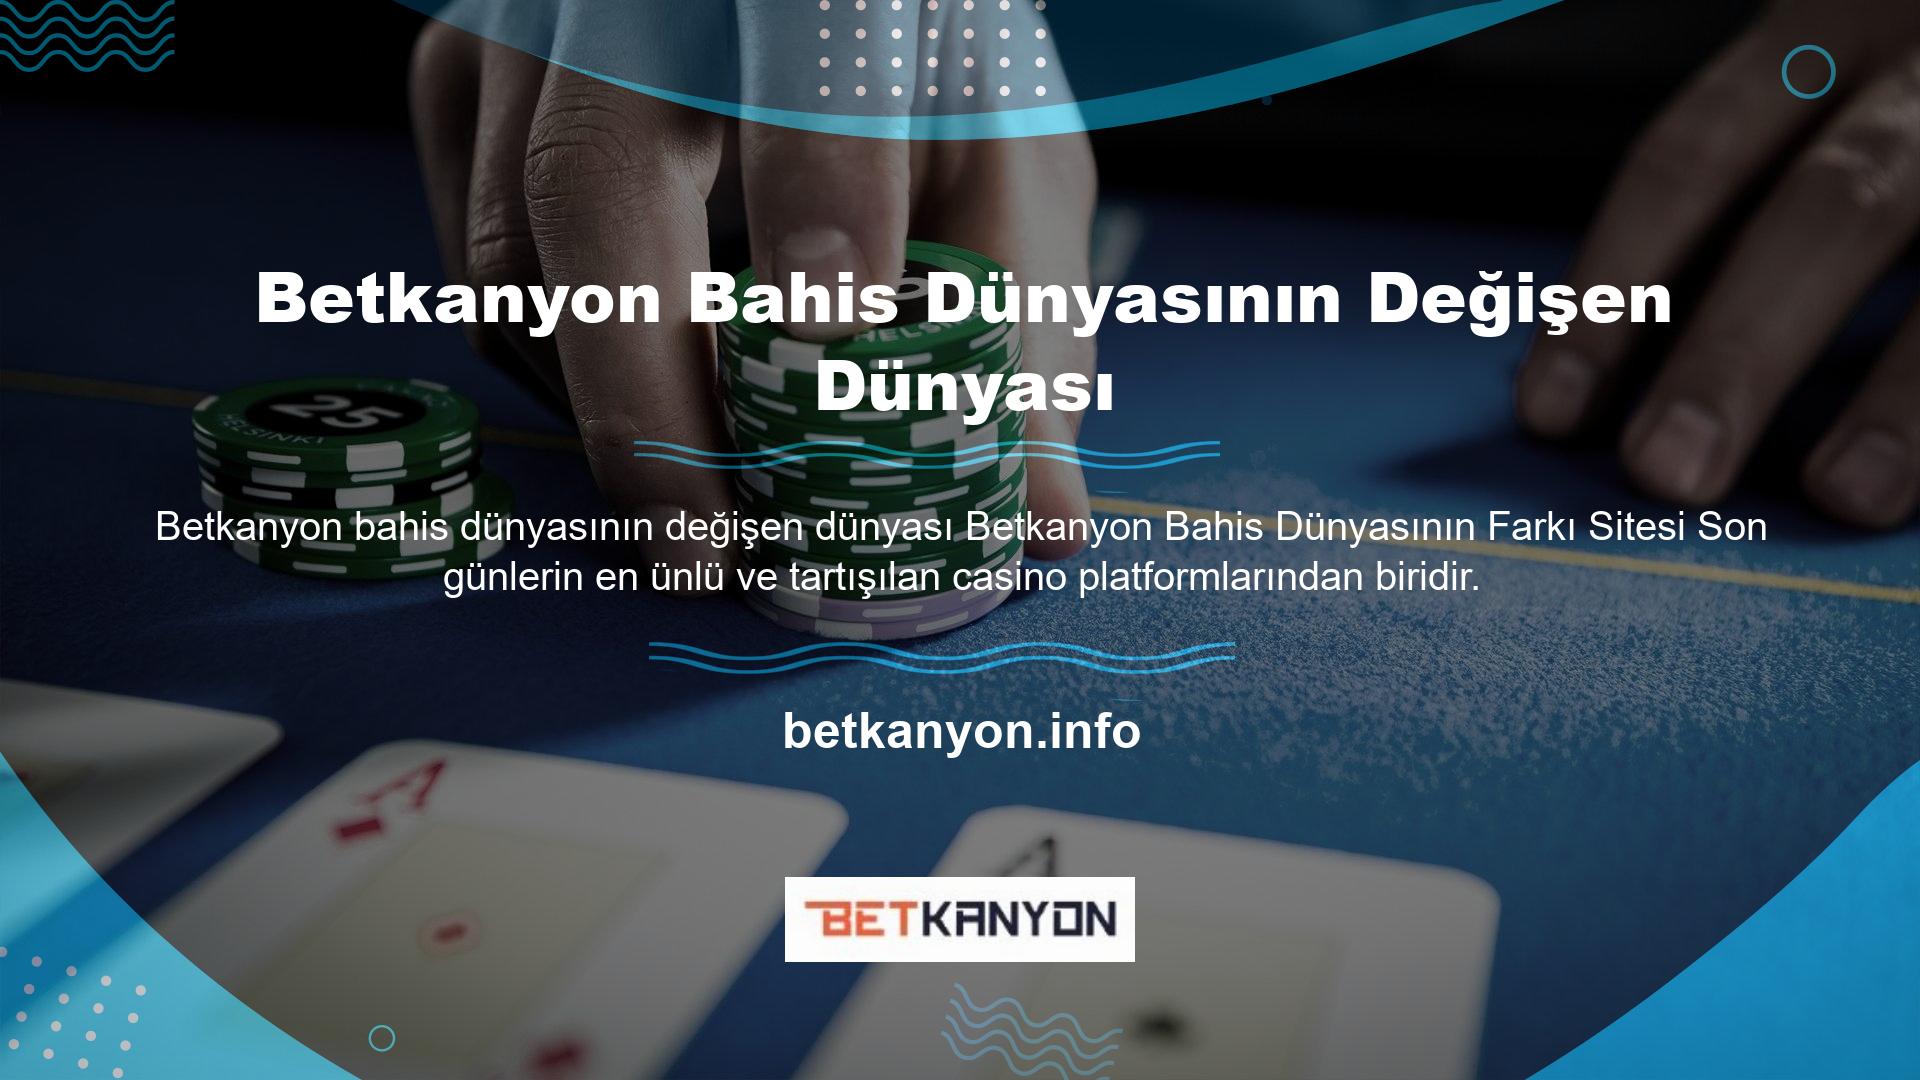 Türk yasal casino platformları, sundukları hizmet ve fırsatlar açısından ne yazık ki Avrupa standartlarının gerisinde kalıyor